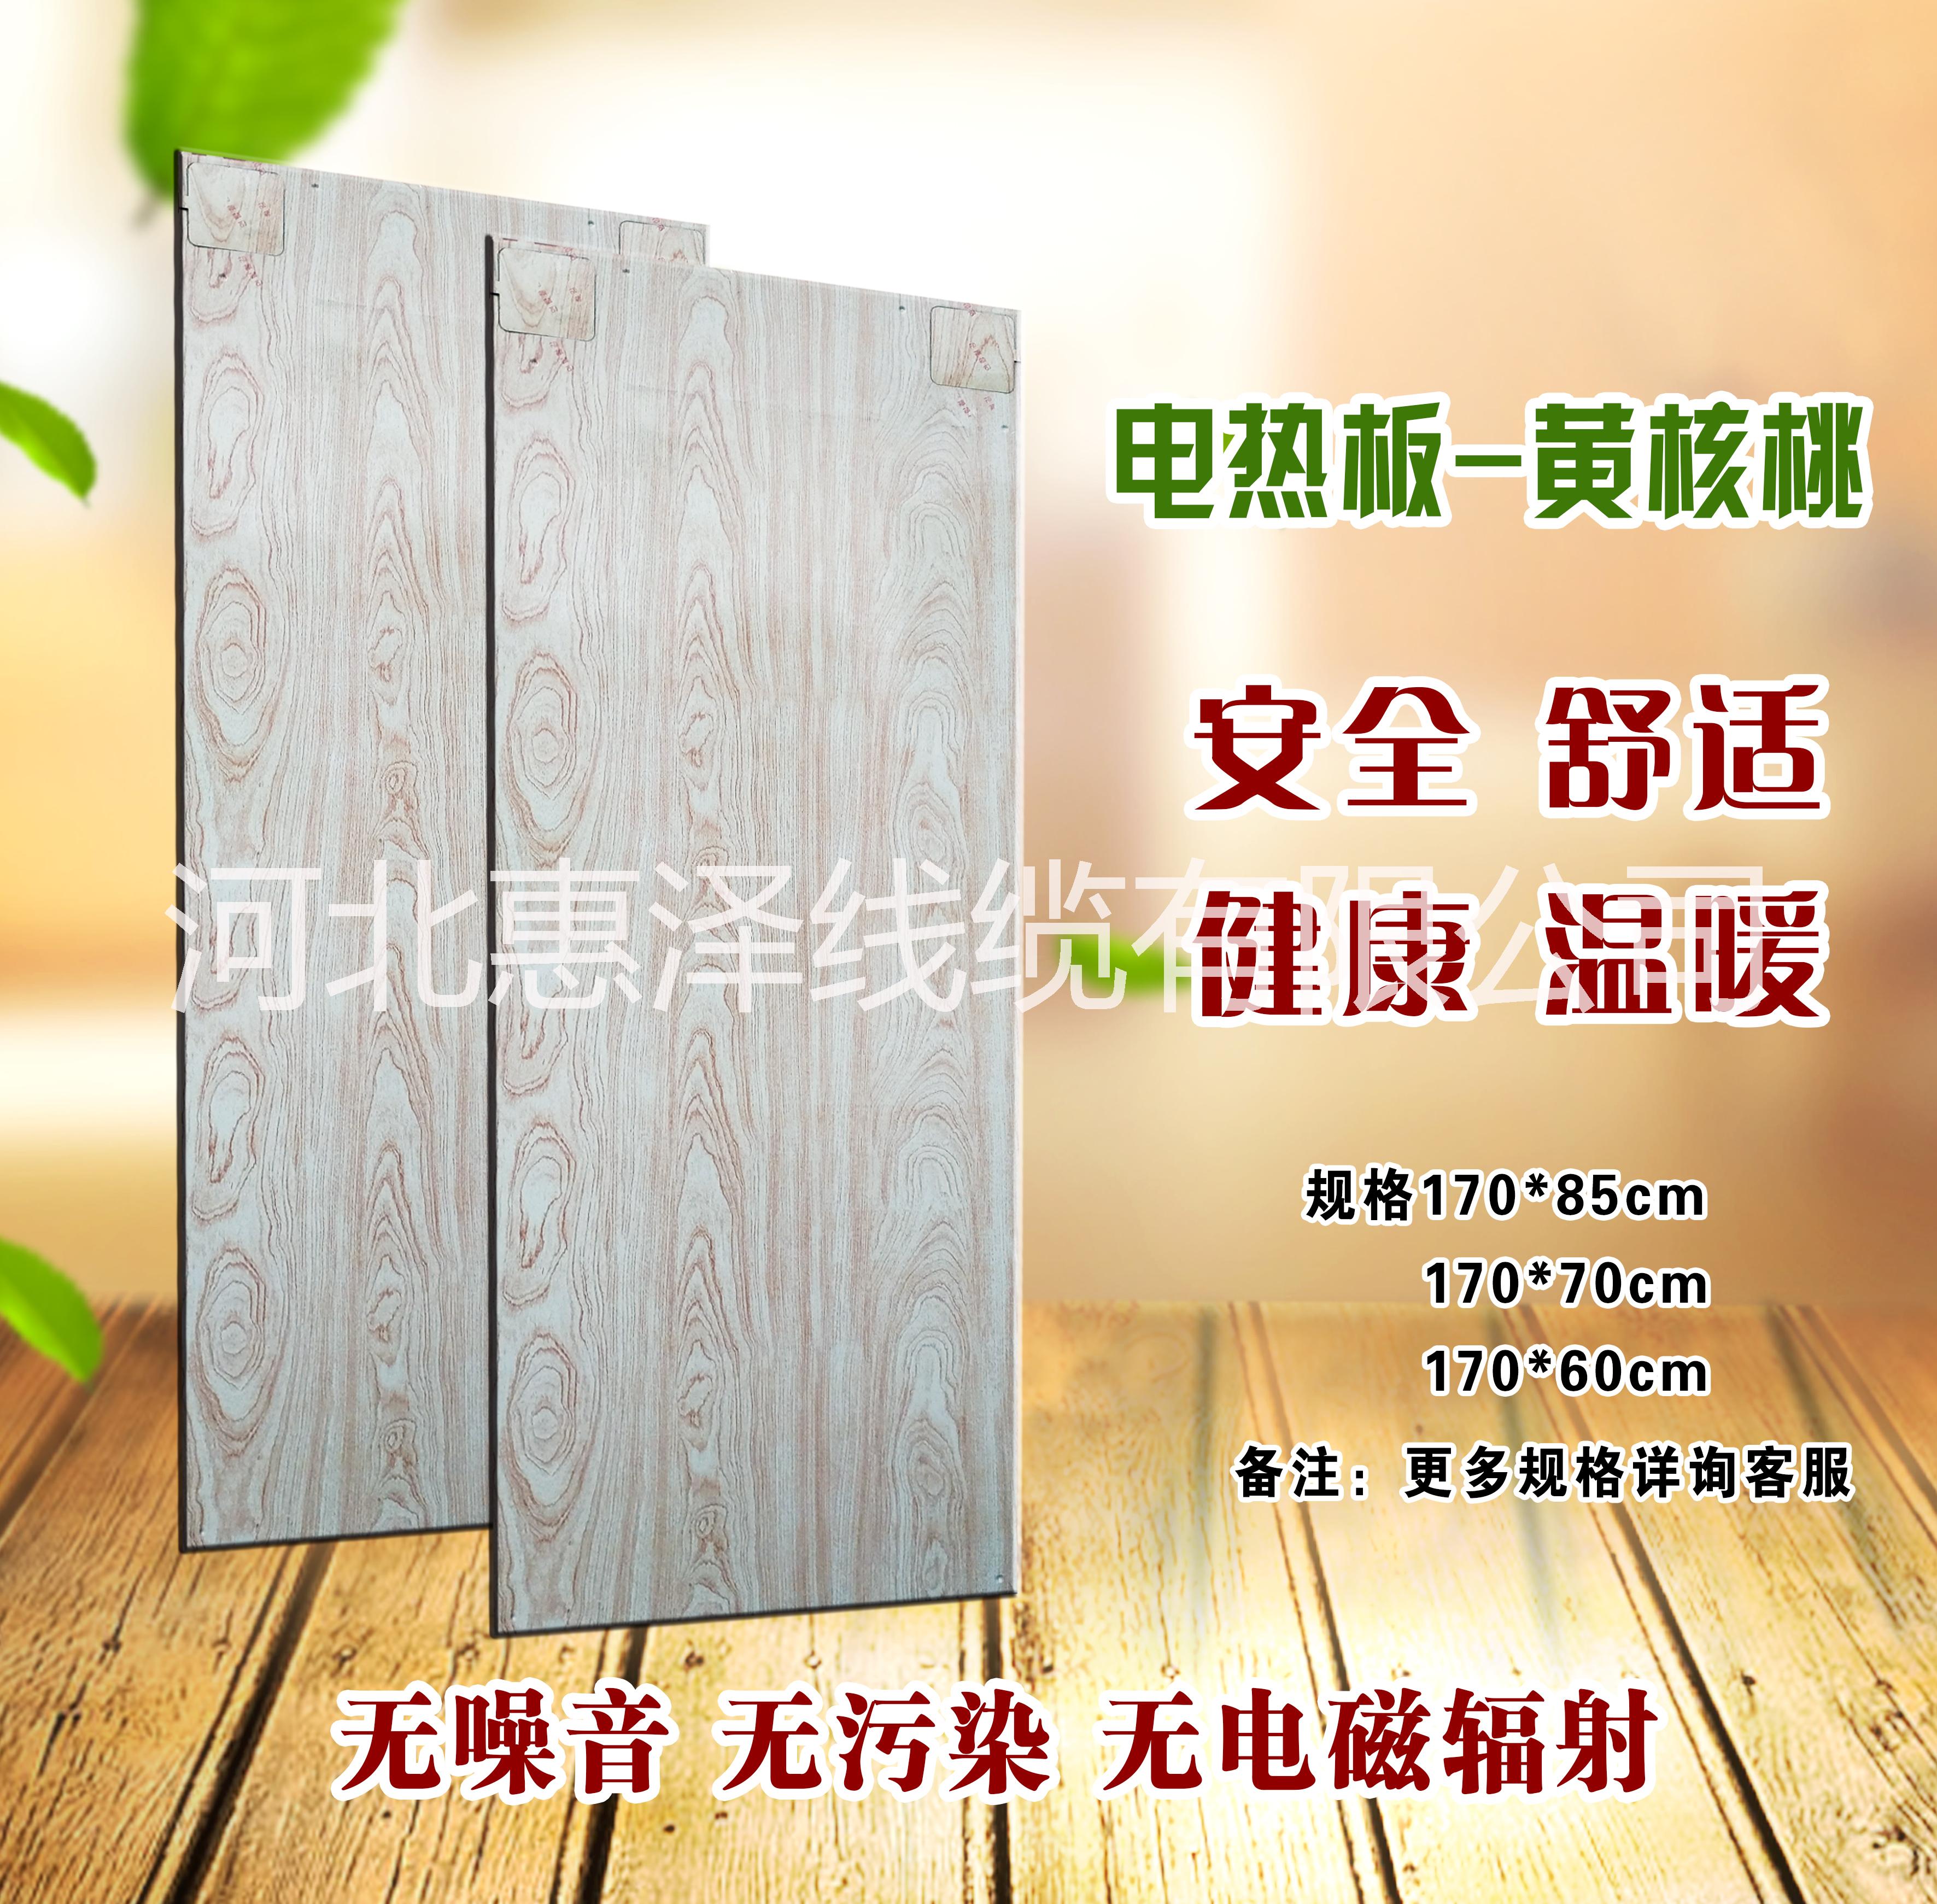 甘肃宁夏地区专用电热炕板-厂家直 甘肃宁夏地区专用电热炕板-电暖气